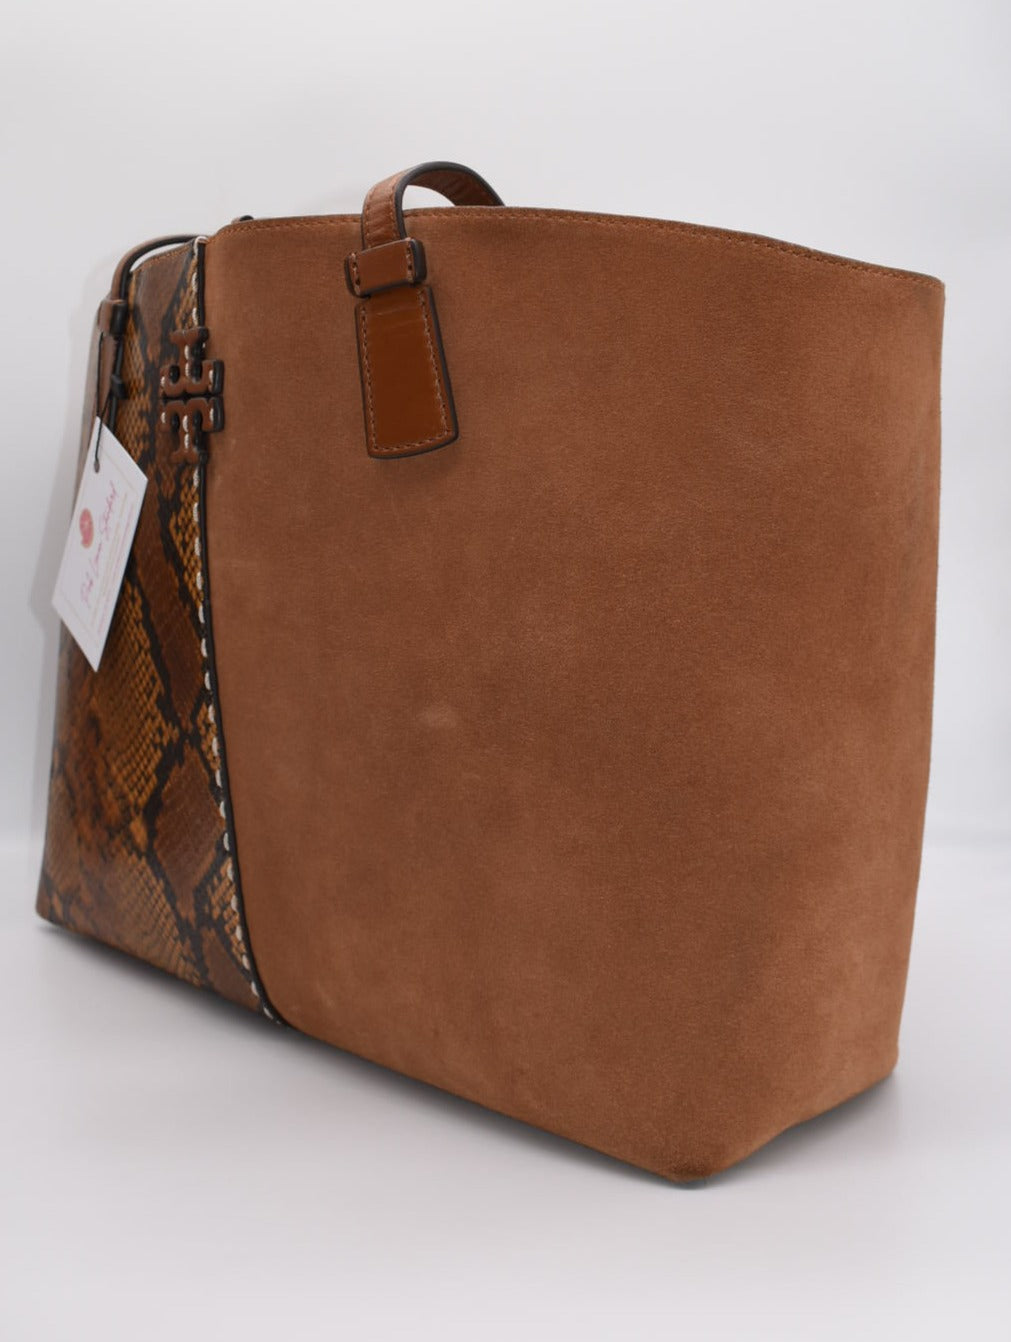 Tory Burch (136091) Emerson Small Tempranillo Saffiano Leather Tote Handbag  - Walmart.com